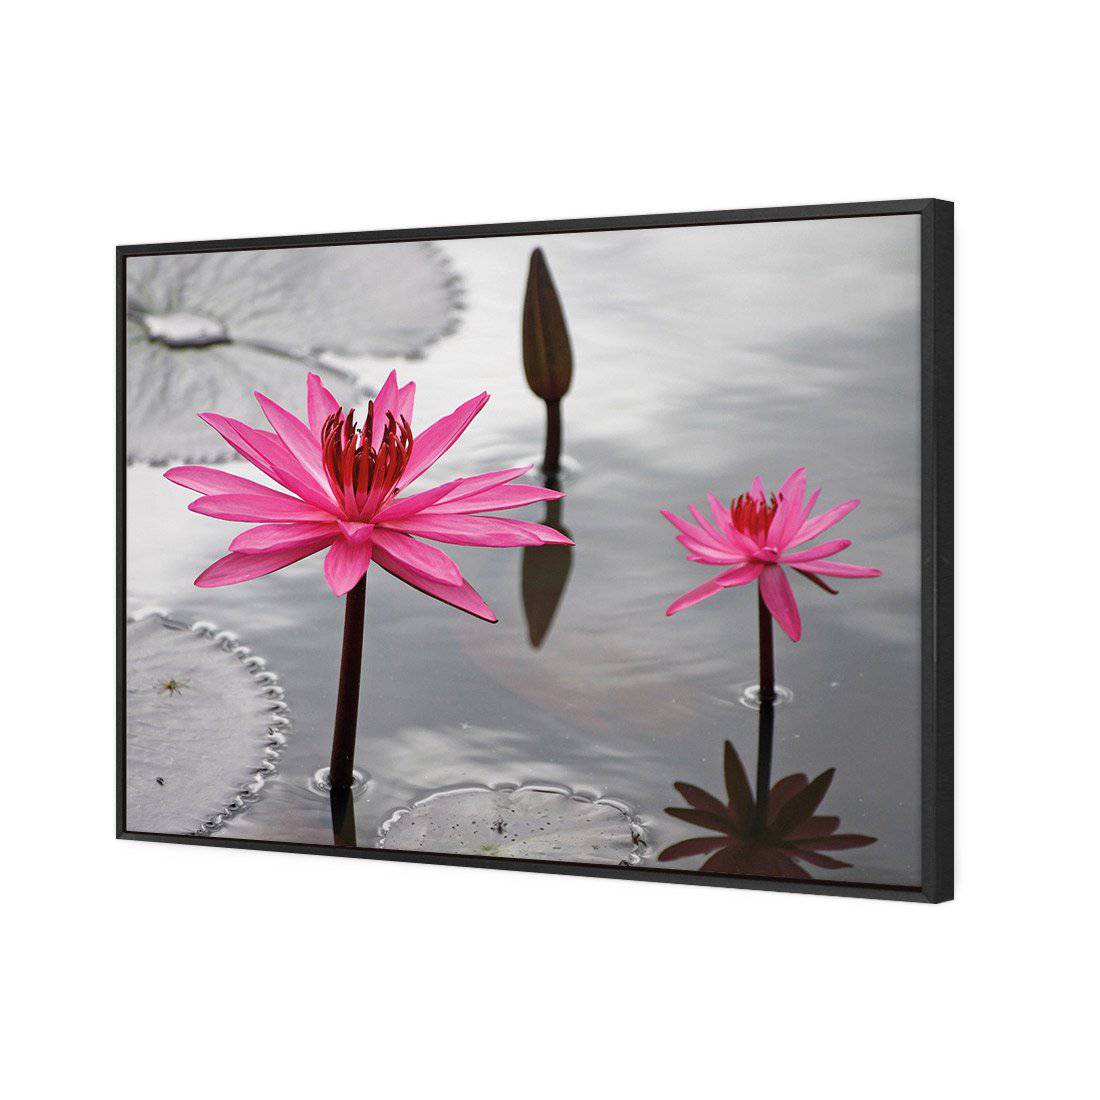 Pop Pink Lilies Canvas Art-Canvas-Wall Art Designs-45x30cm-Canvas - Black Frame-Wall Art Designs